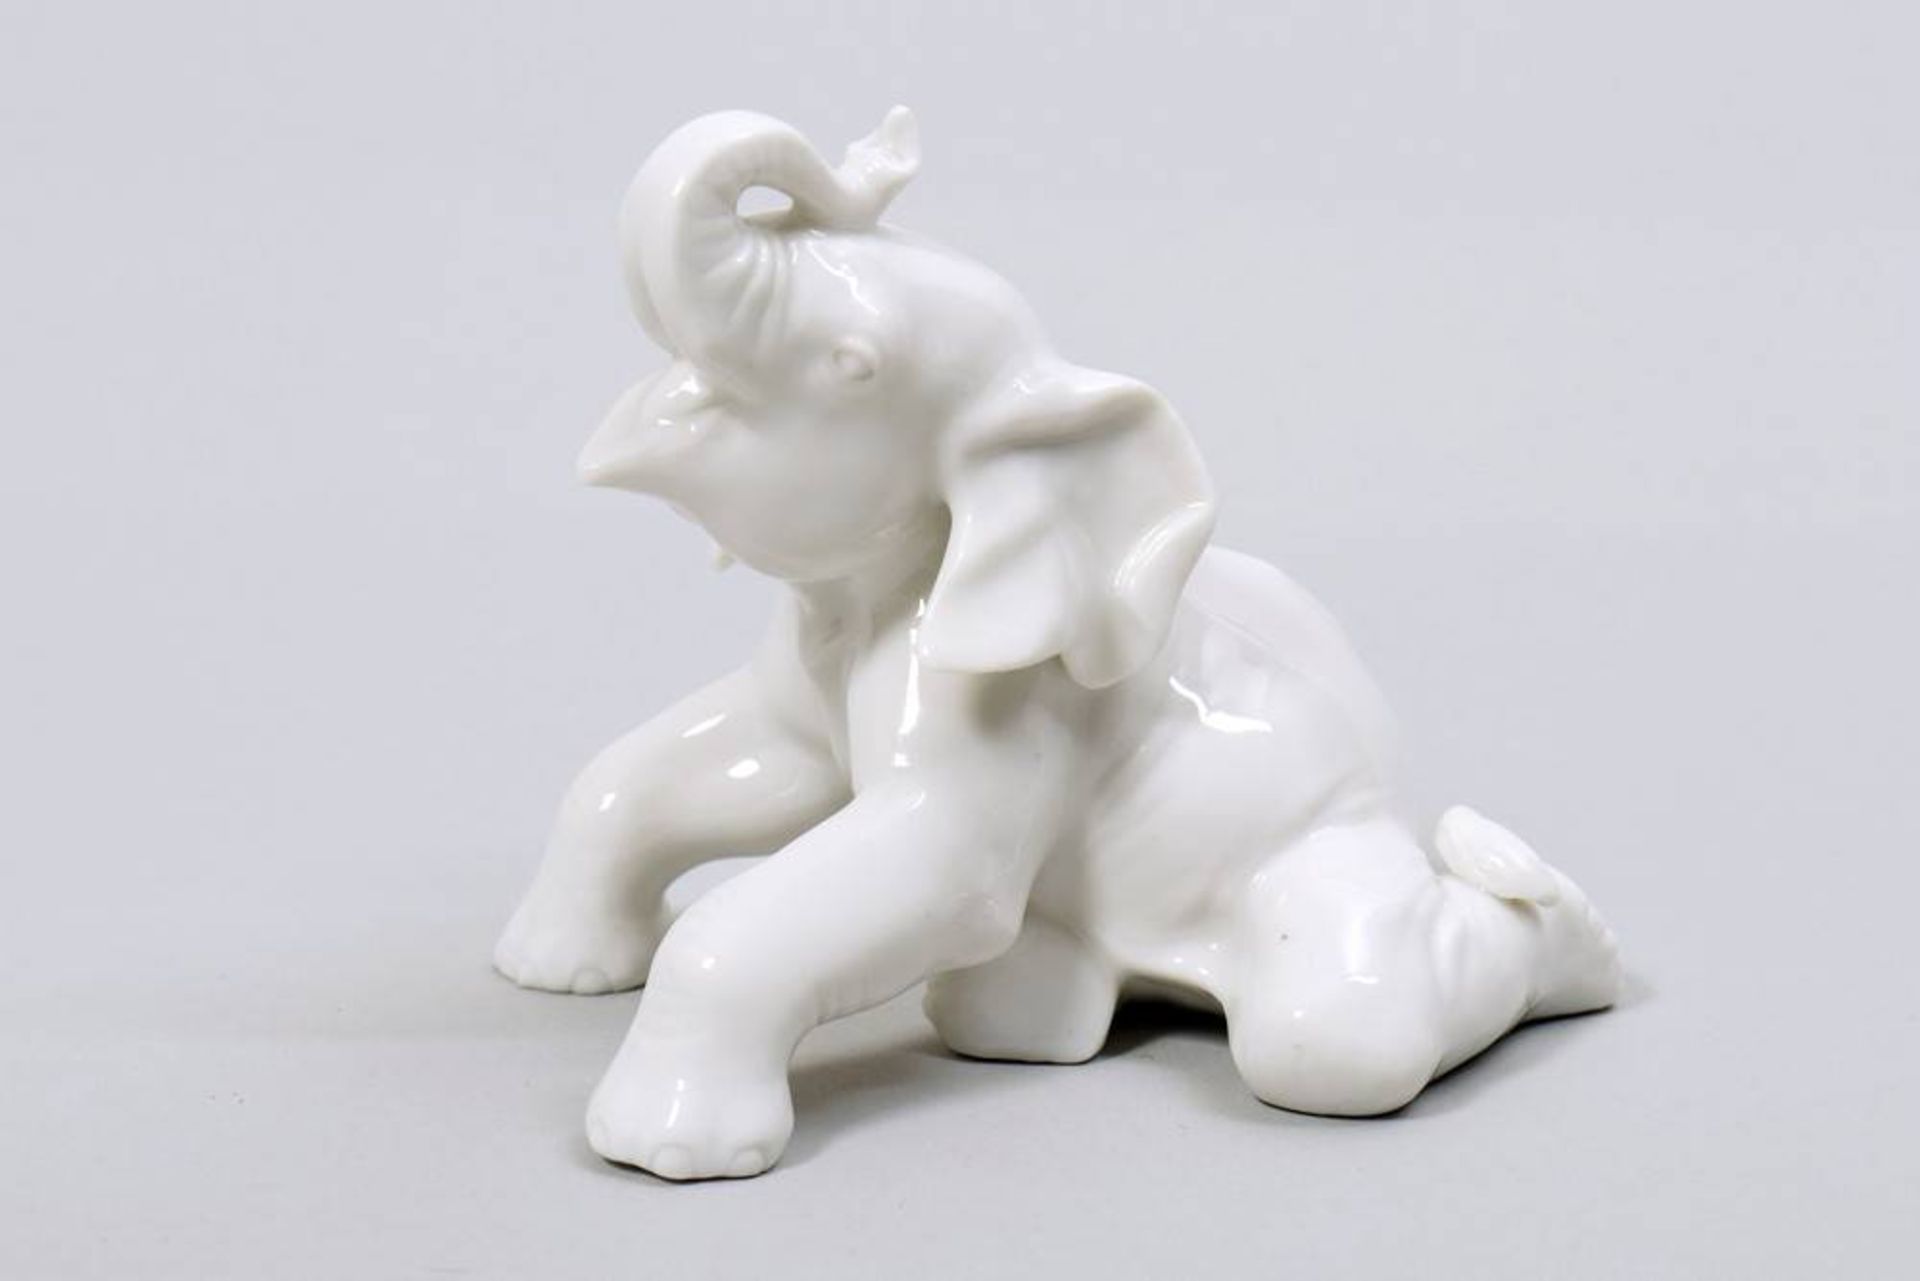 Hockender Elefant, Allach1933-45, gemarkt, PressNr. unleserlich, Weißporzellan, H: 7cmReclining